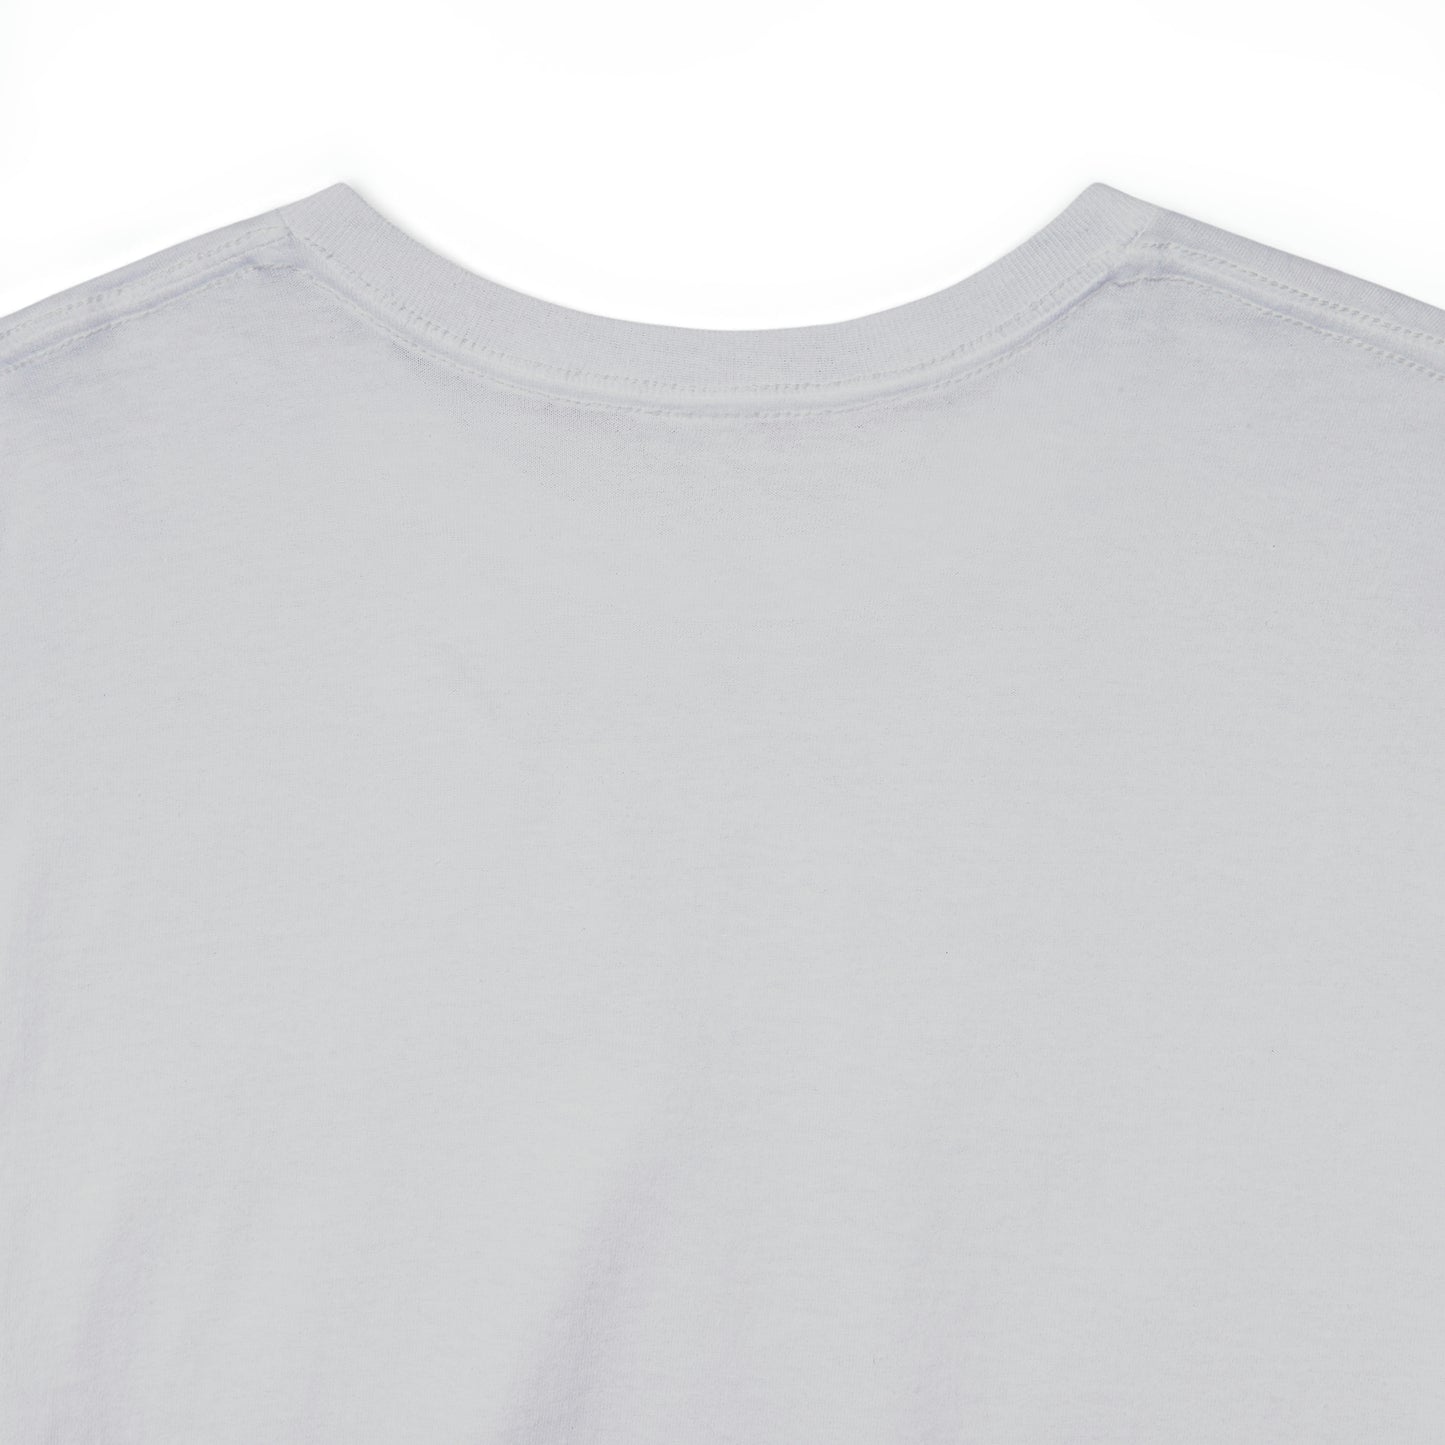 TSMC T-Shirt